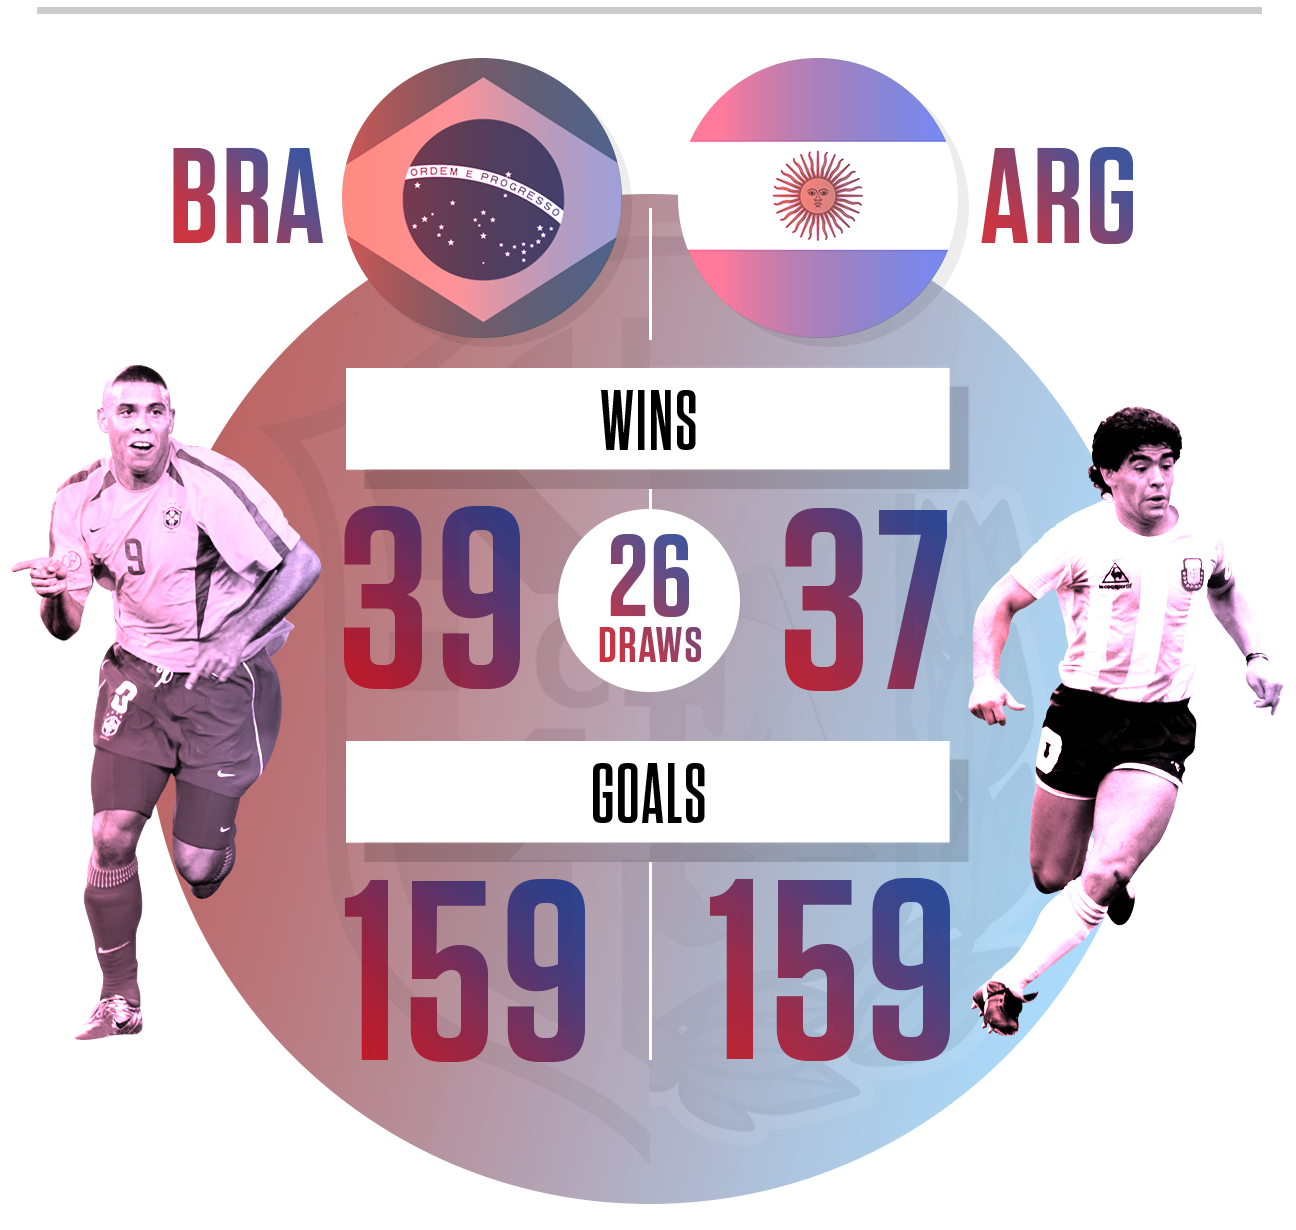 Argentina Vs Brazil Next Match Time - Argentina vs brazil match time